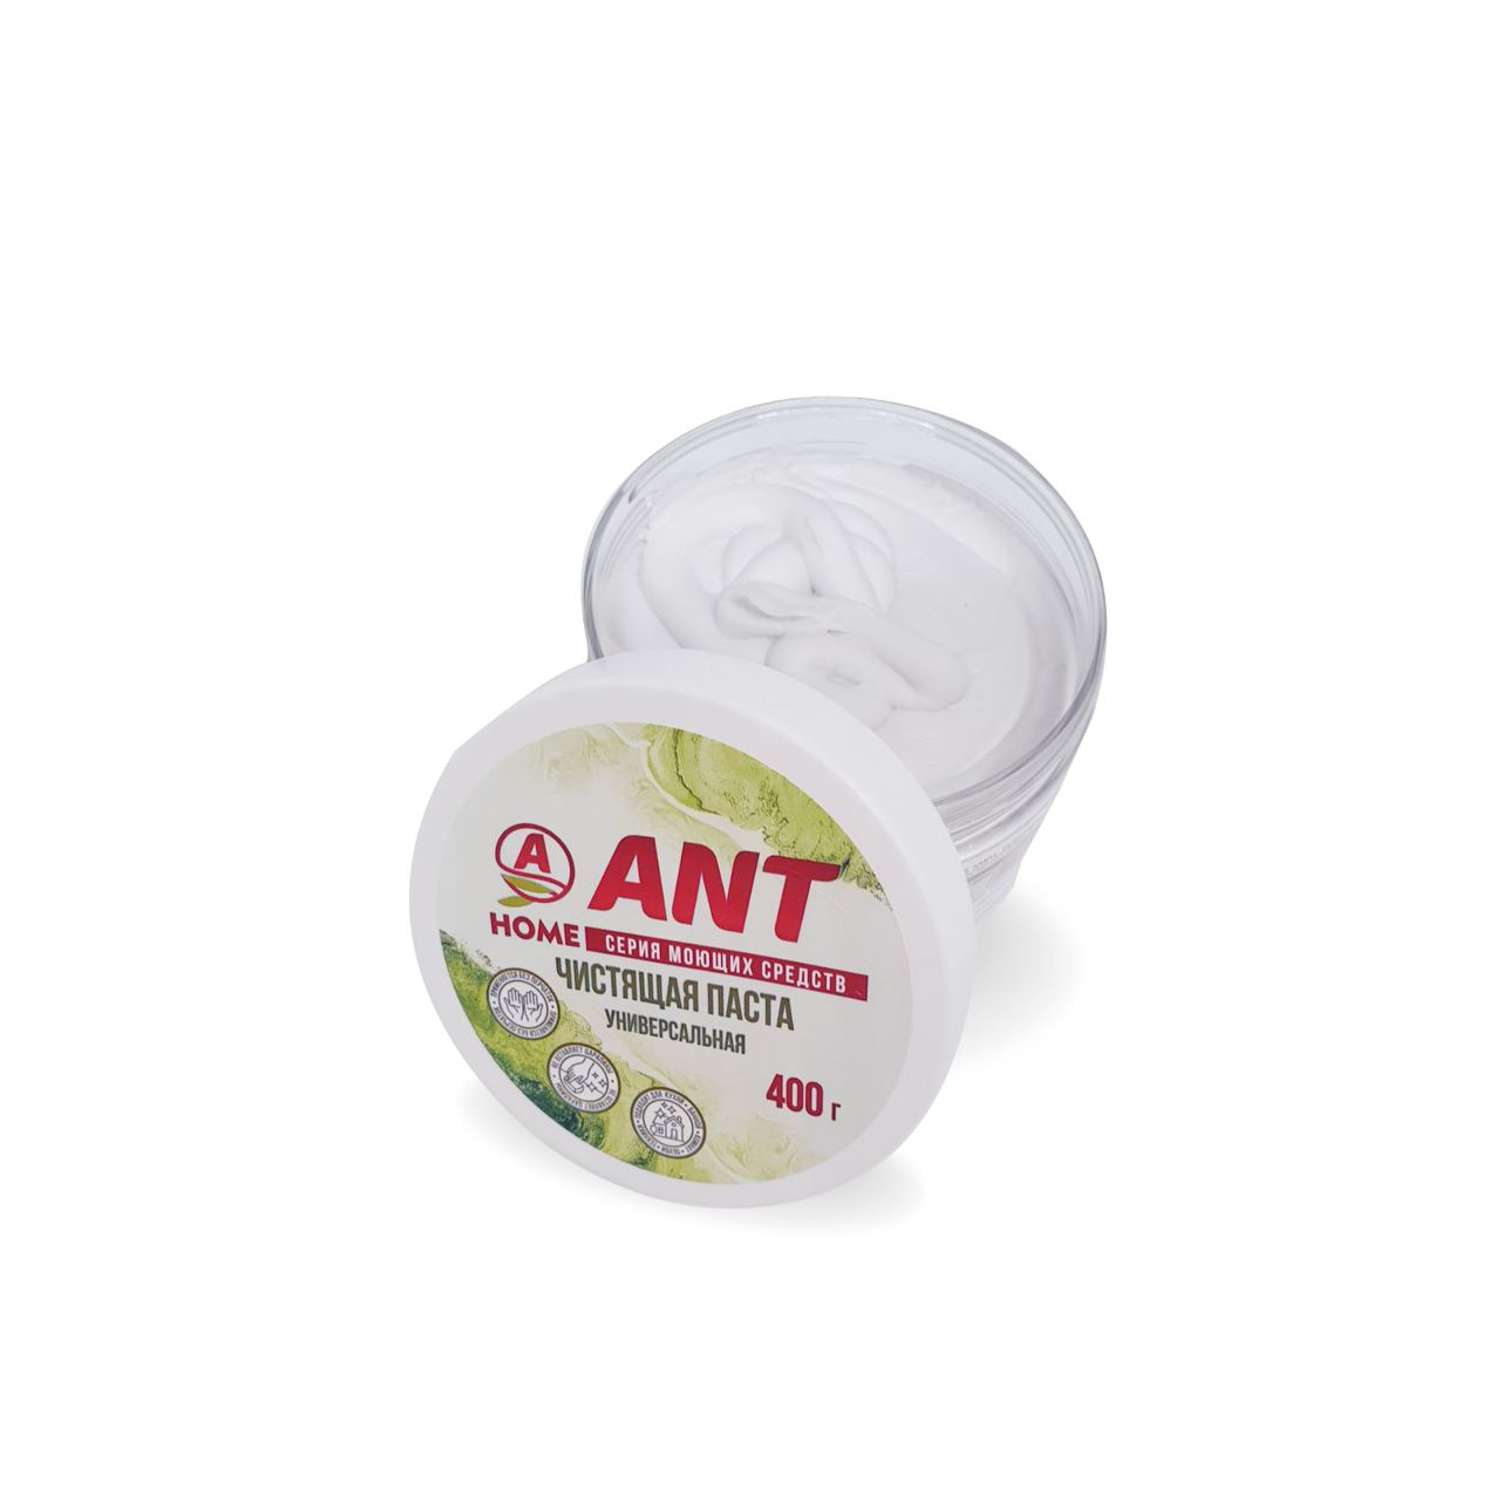 Чистящая паста ANT универсальная 400 г - фото 2